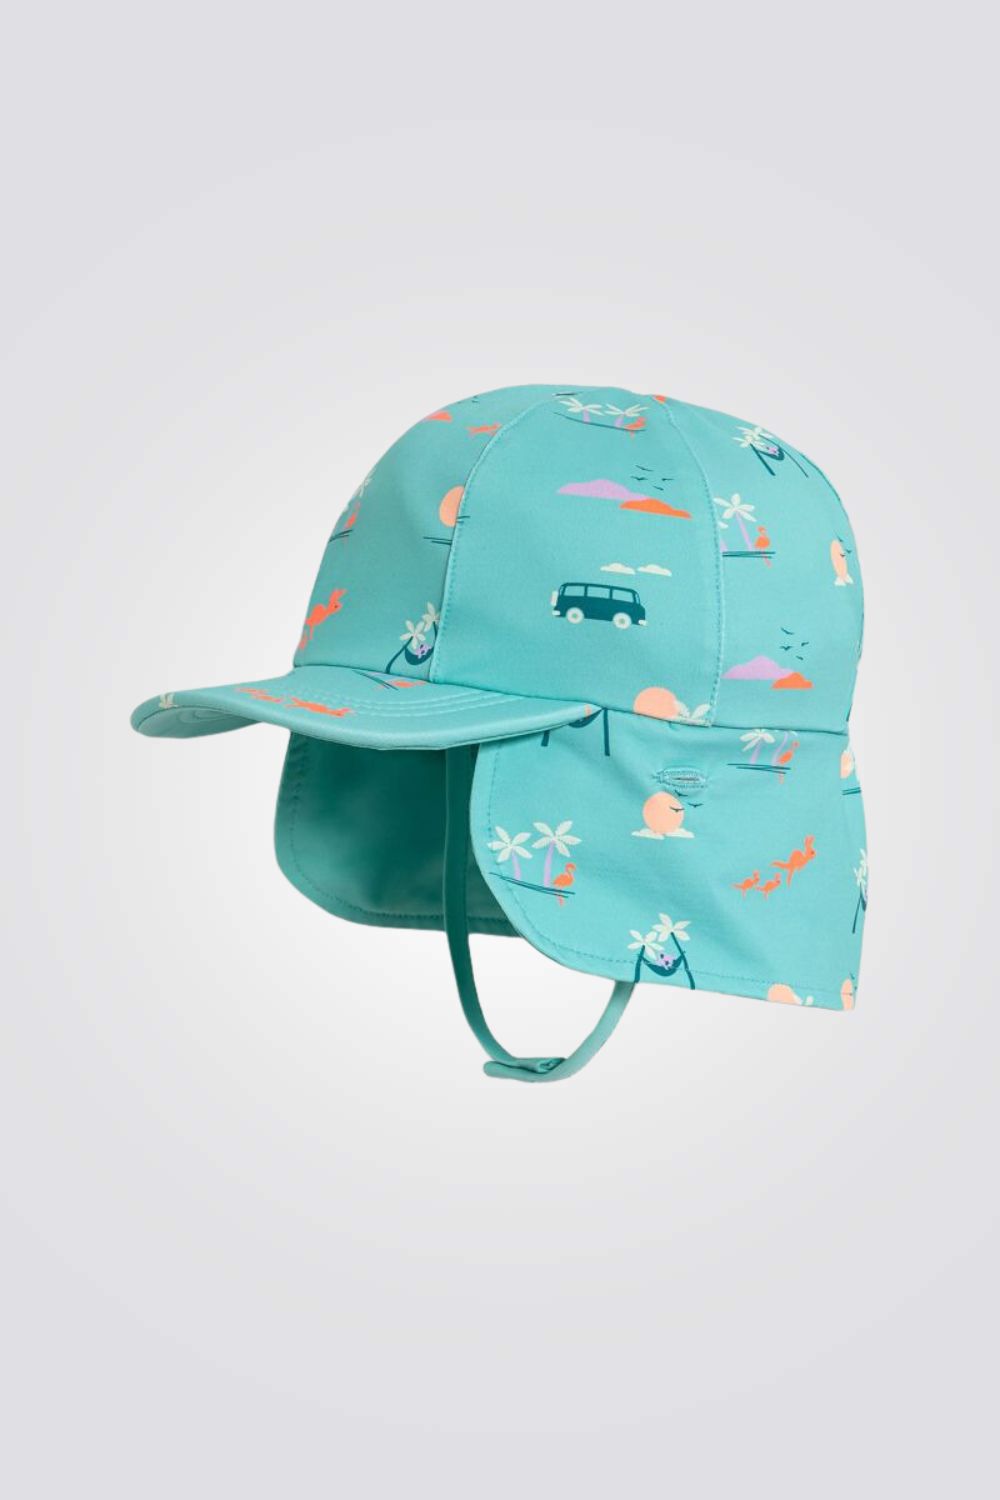 כובע ים דו צדדי לתינוקות בצבע תכלת עם הדפס